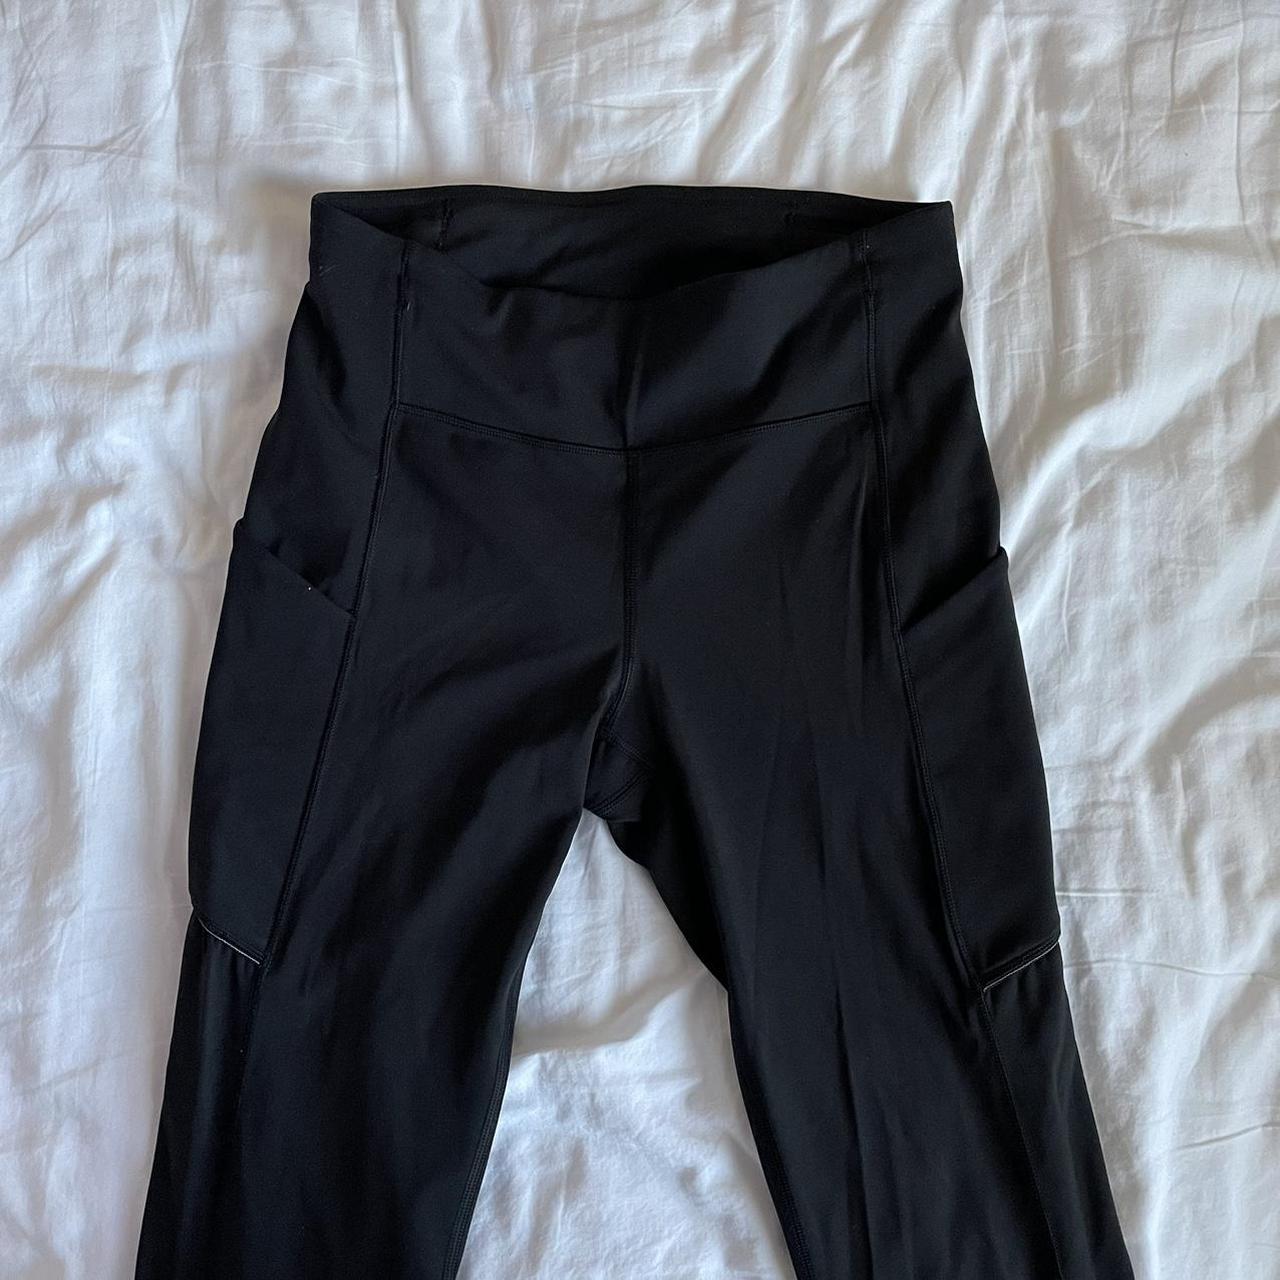 lululemon leggings - size 4 - black - side pockets - Depop